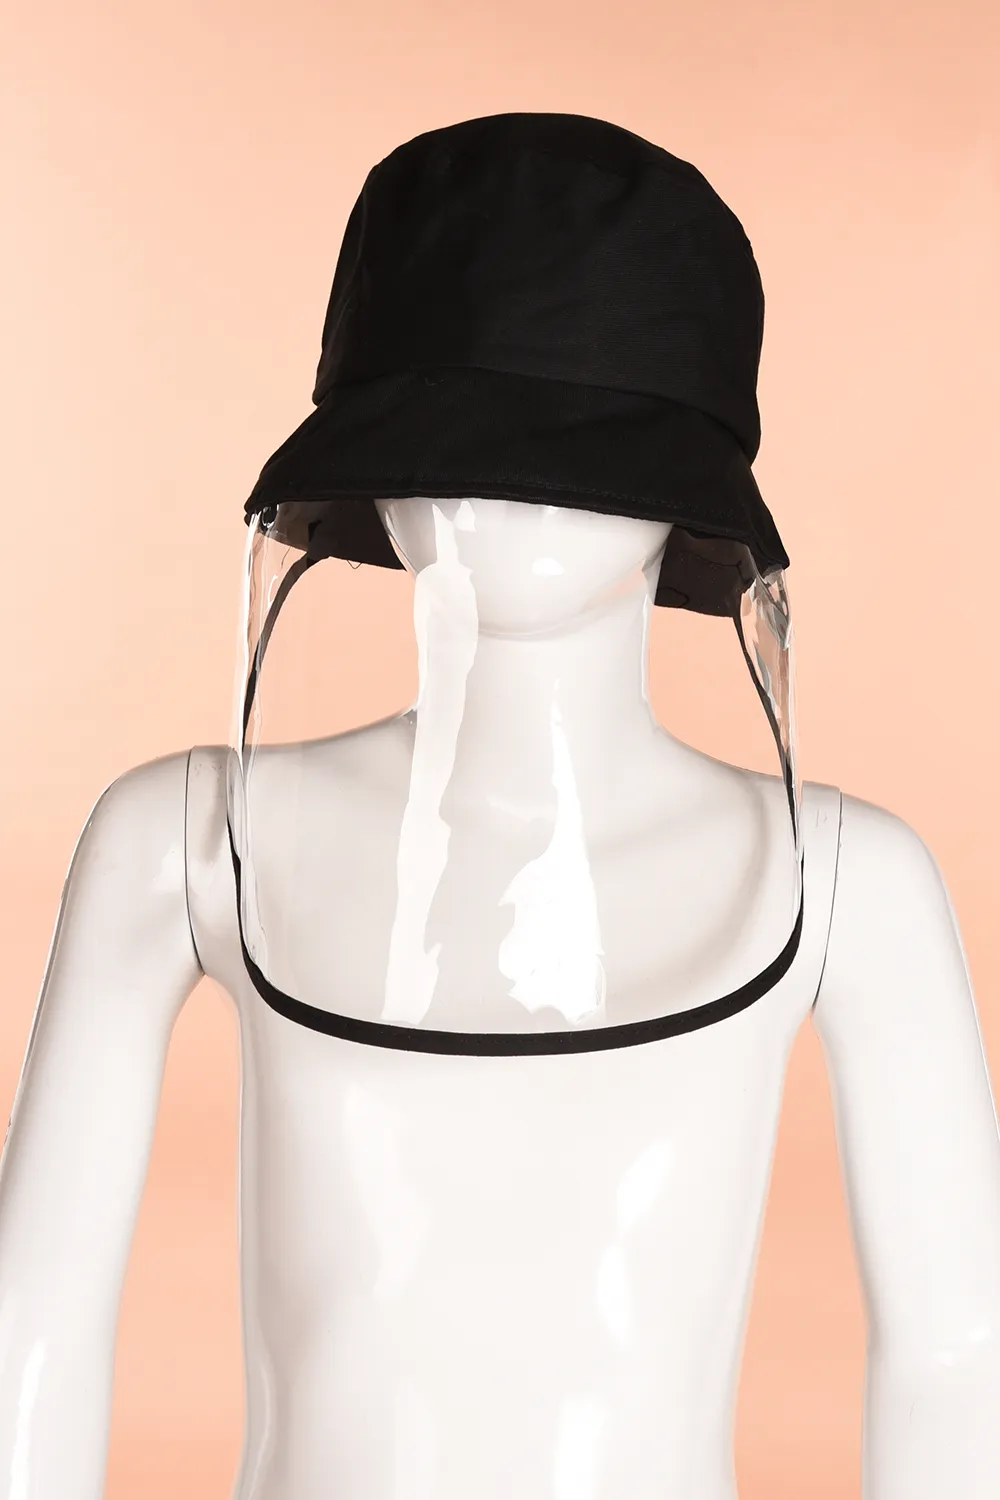 NEUE Sicherheits-Anti-Staub-Schutzmaske, schwarze Abdeckung mit Hut, Anti-Spucke-Anti-Staub-Abdeckung, Vollgesichts-Augenschutzmaske